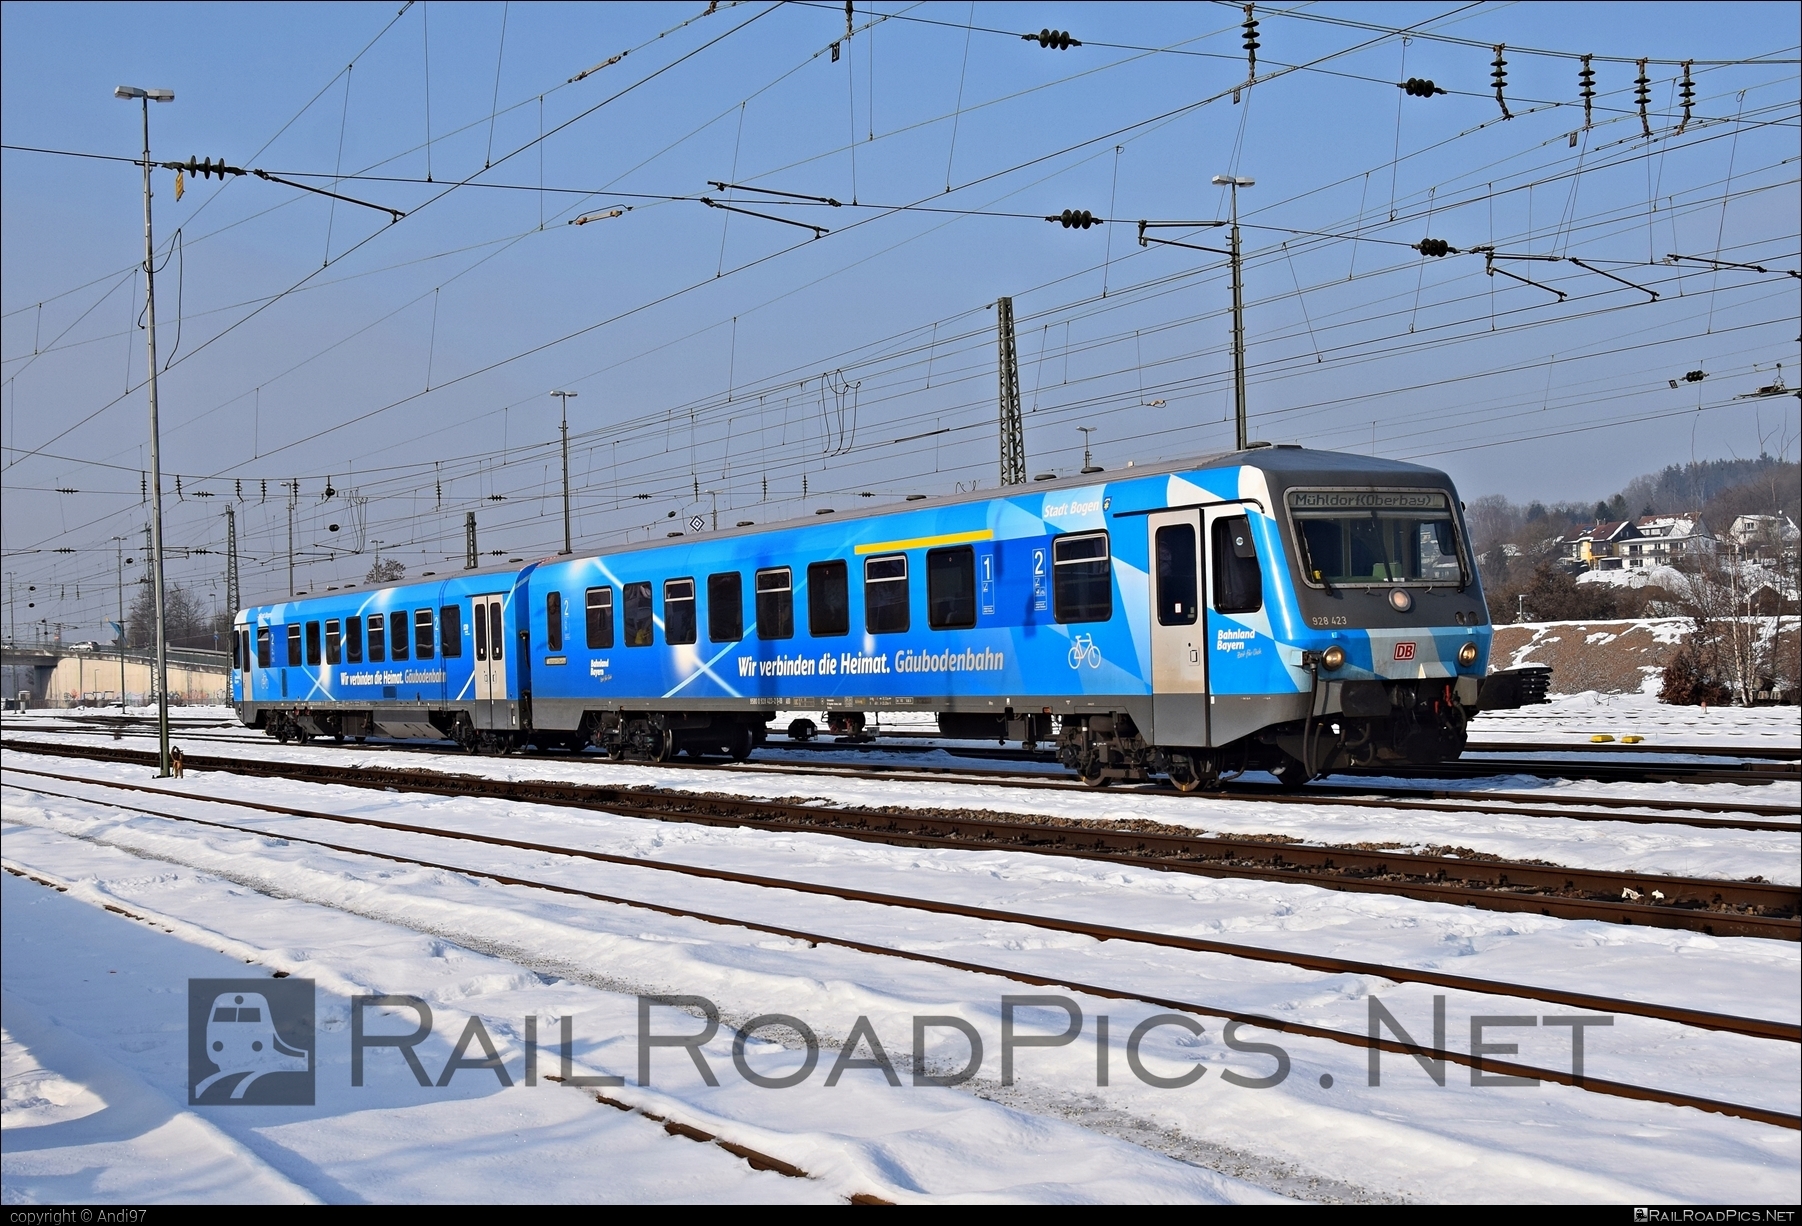 Düwag DB Class 628 - 628 423 operated by DB Regio AG #DBregio #DBregioAG #db #dbclass628 #deutschebahn #duewag #duewag628 #duwag #duwag628